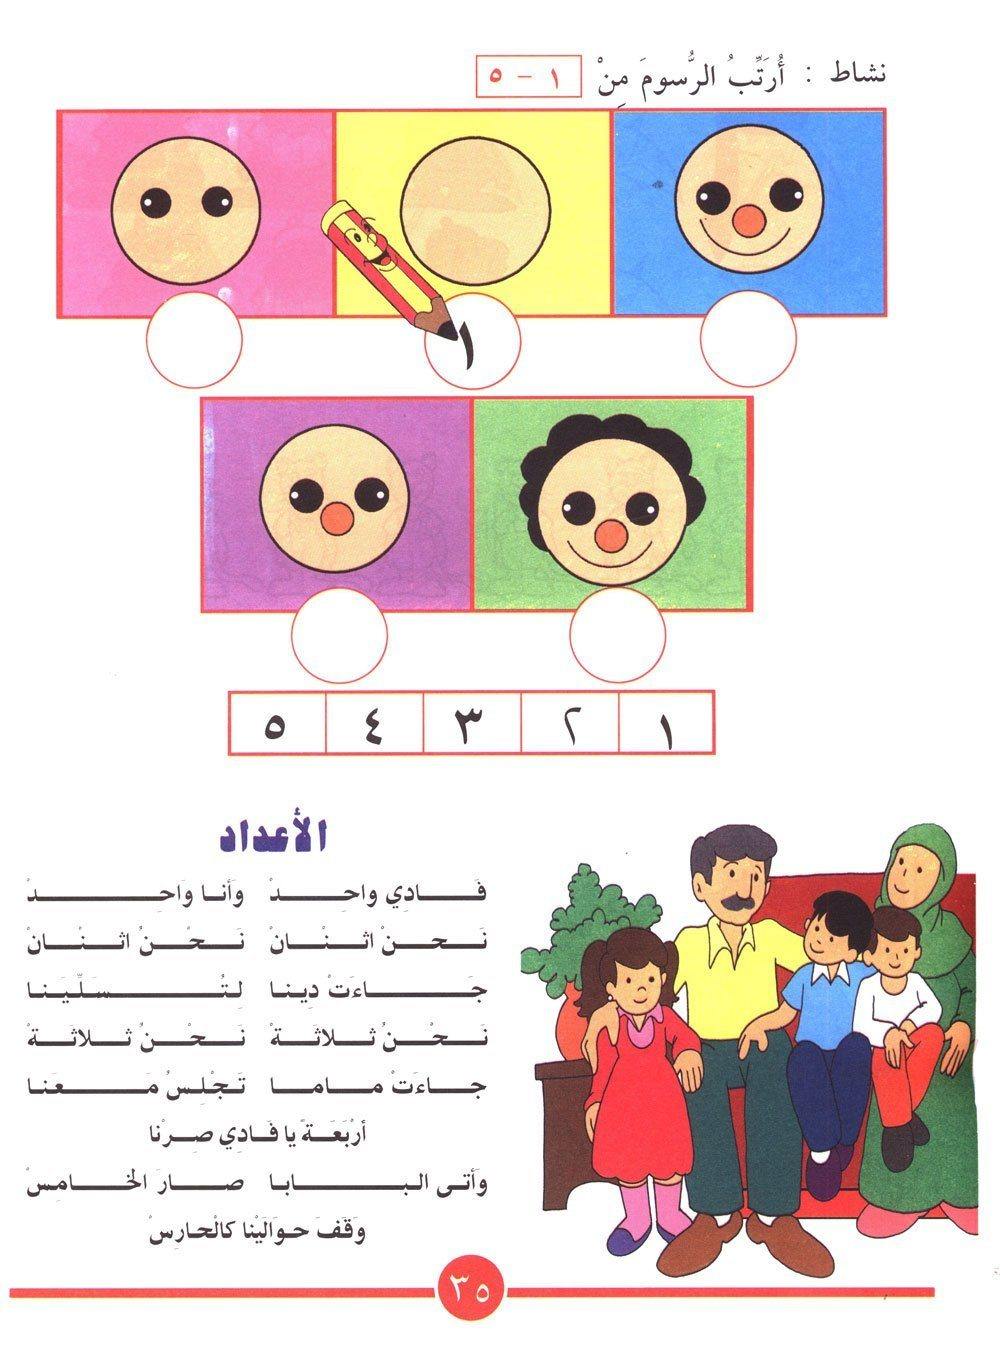 هيا إلى الرياضيات المستوى الأول كتب أطفال زينات عبد الهادي الكرمي